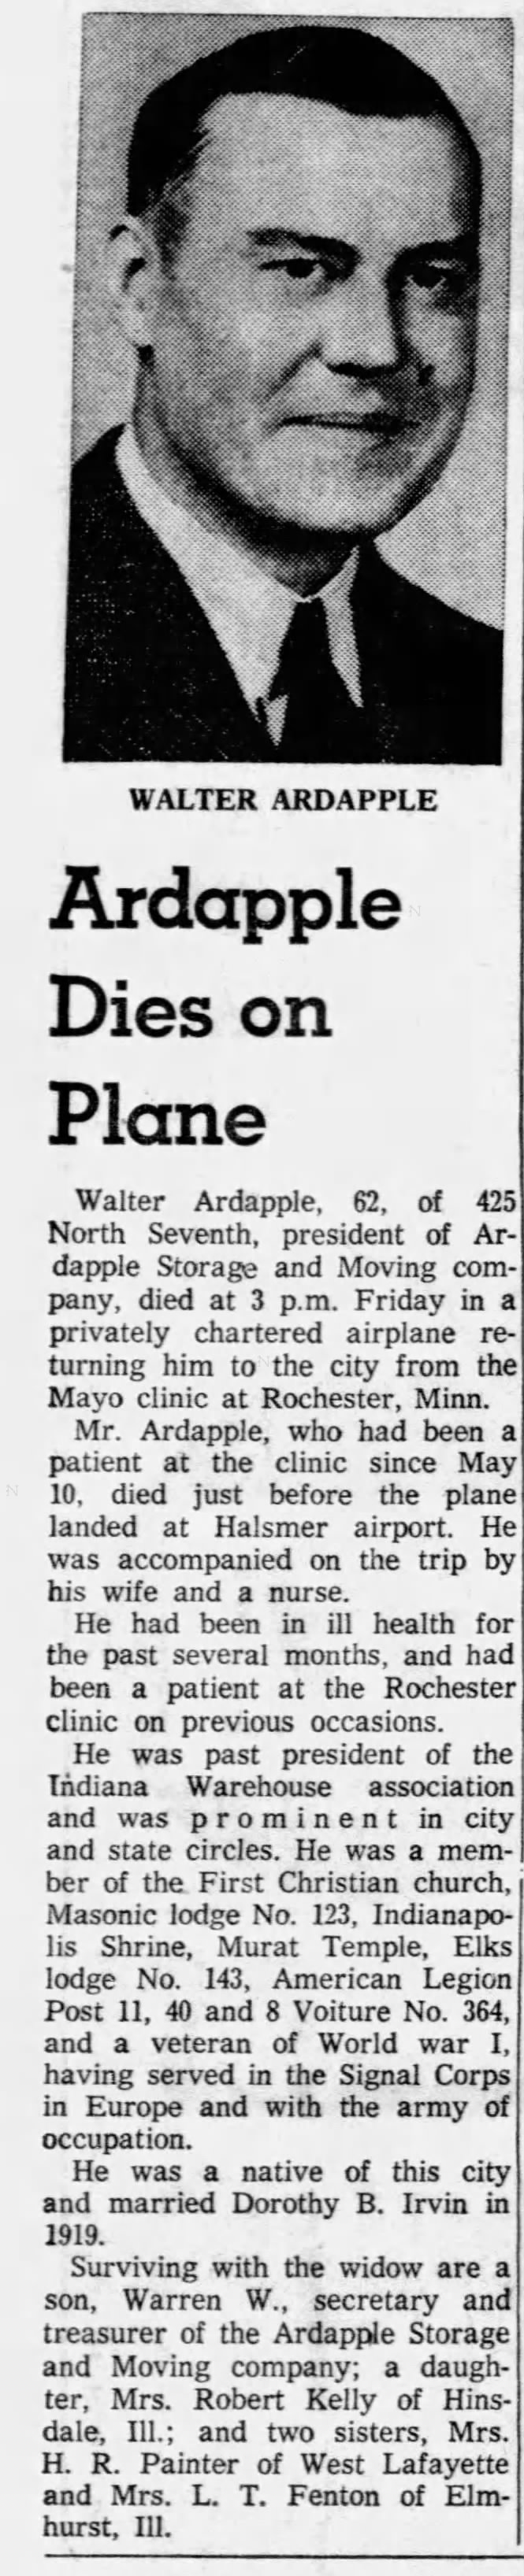 Obituary: Walter ARDAPPLE (Aged 62)